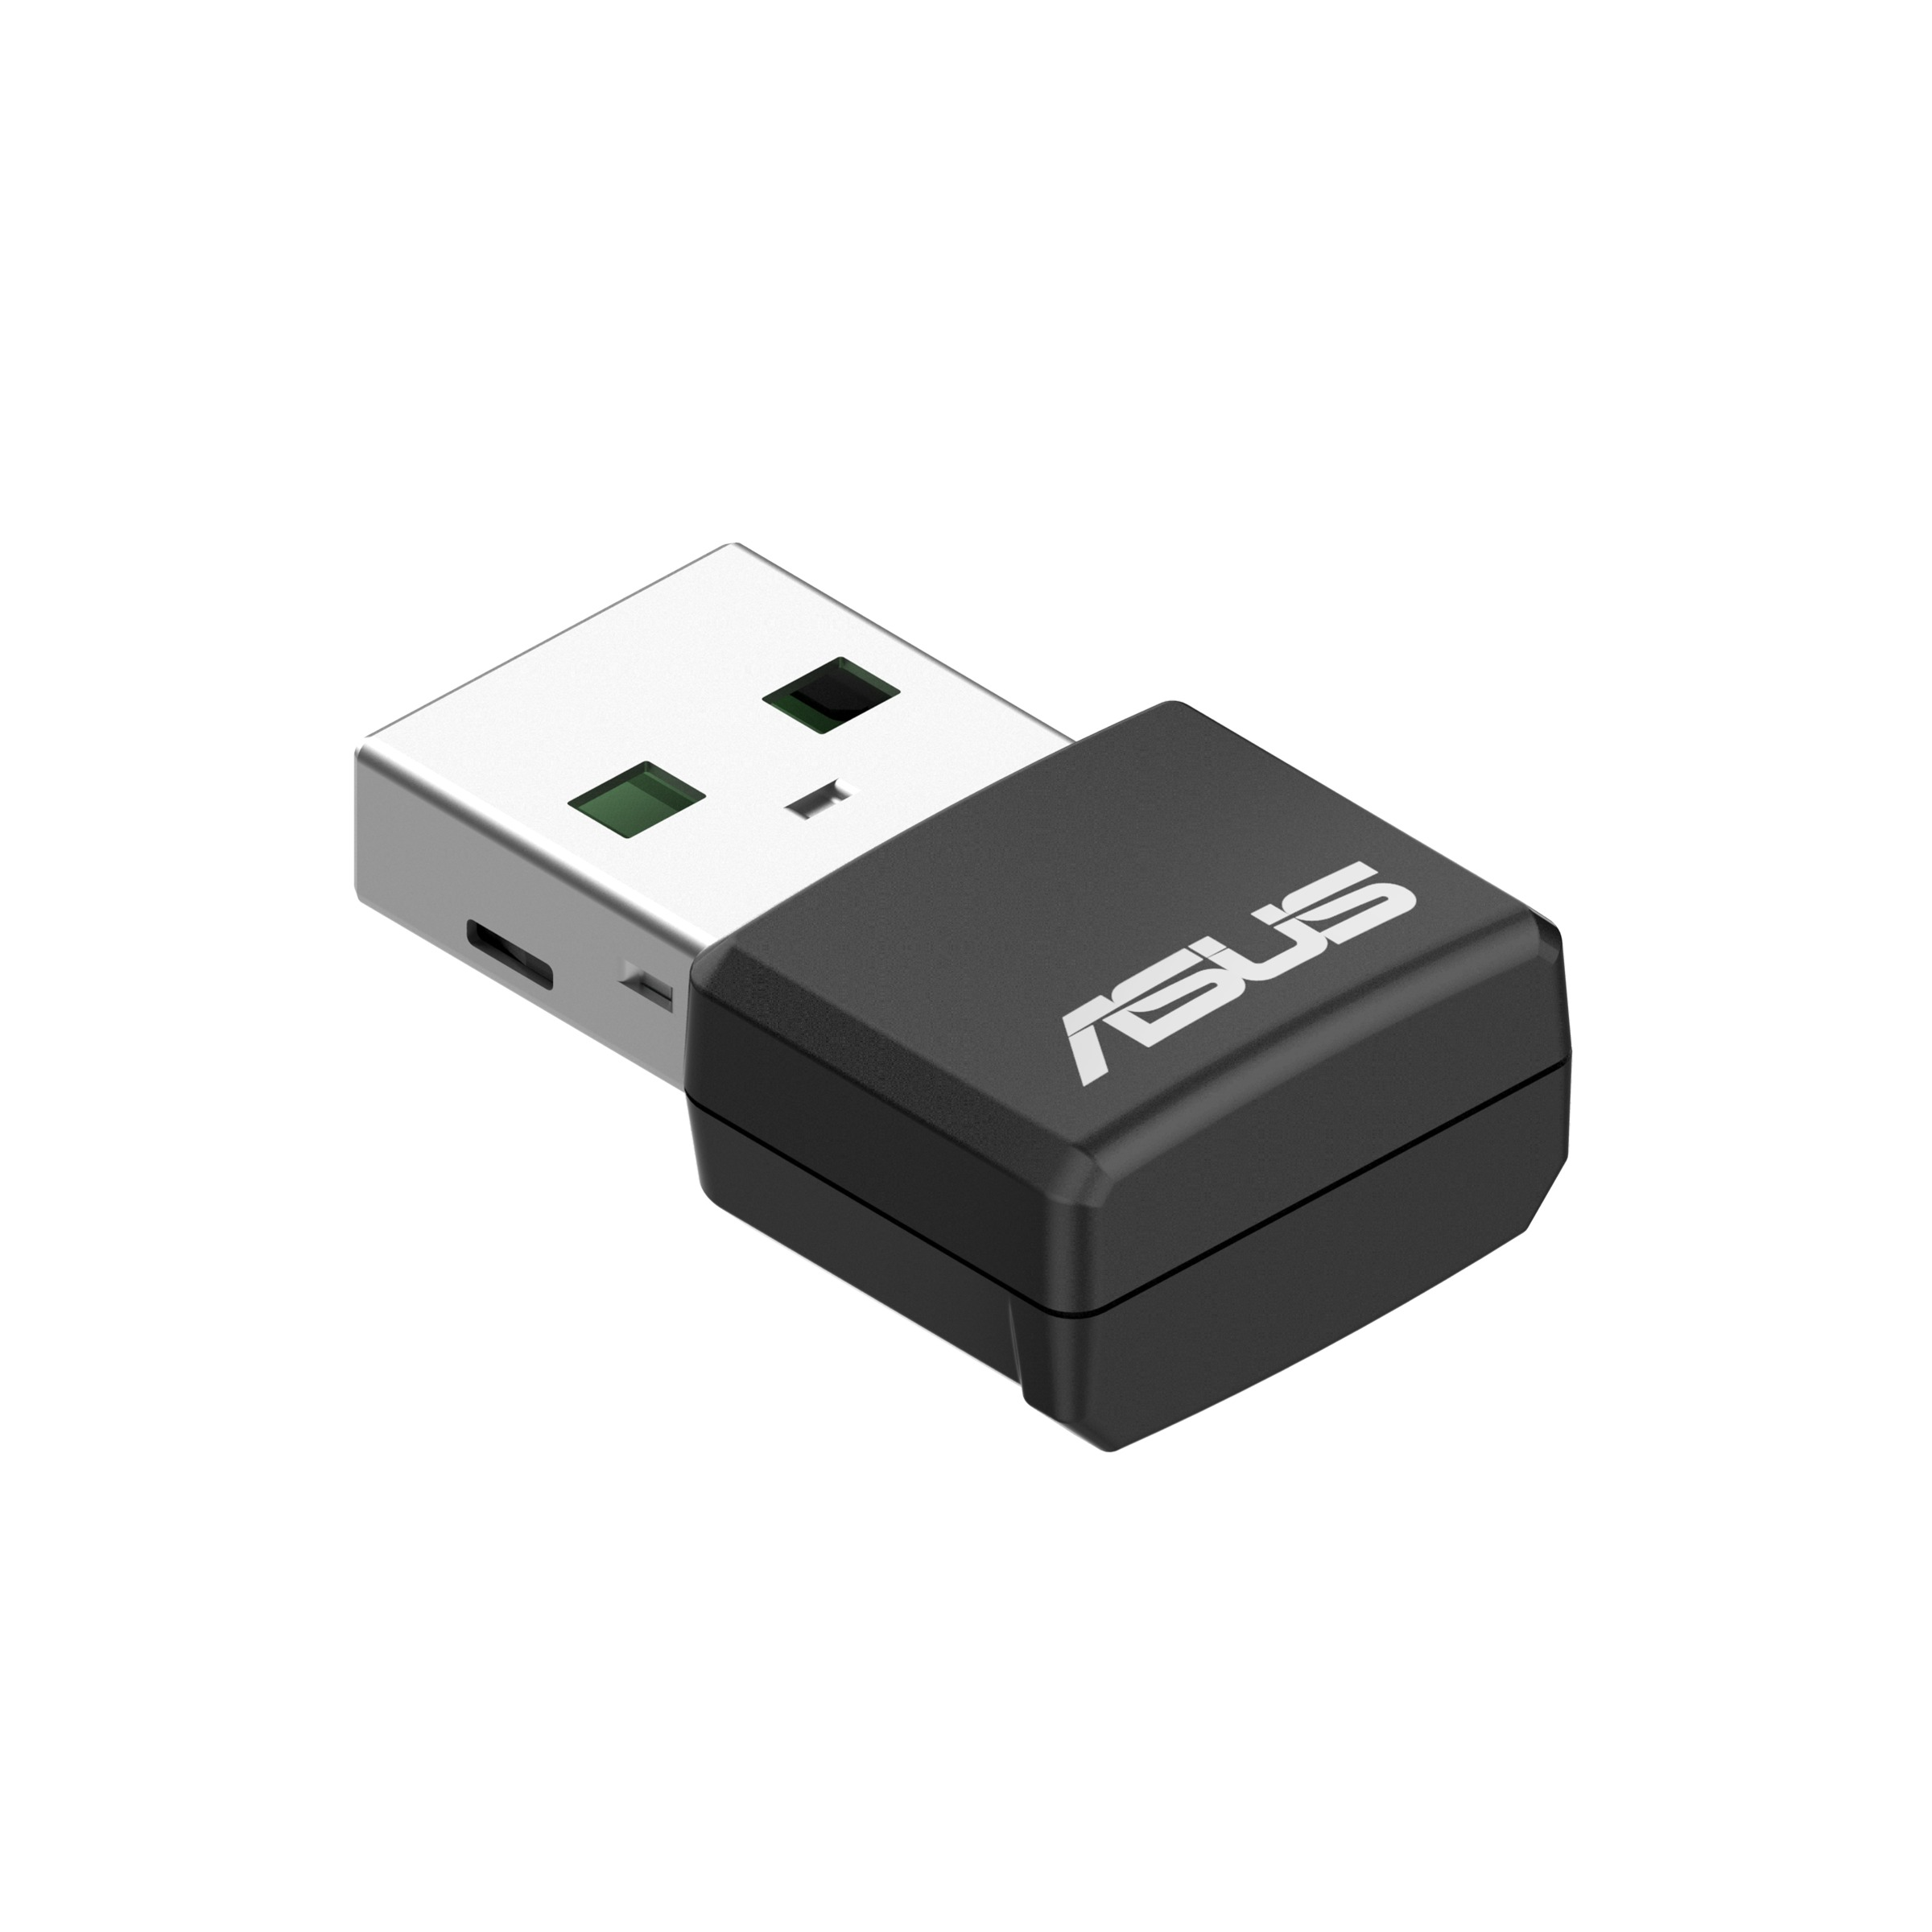 AX1800 ASUS WiFi USB-AX55 6 Adapter Nano USB